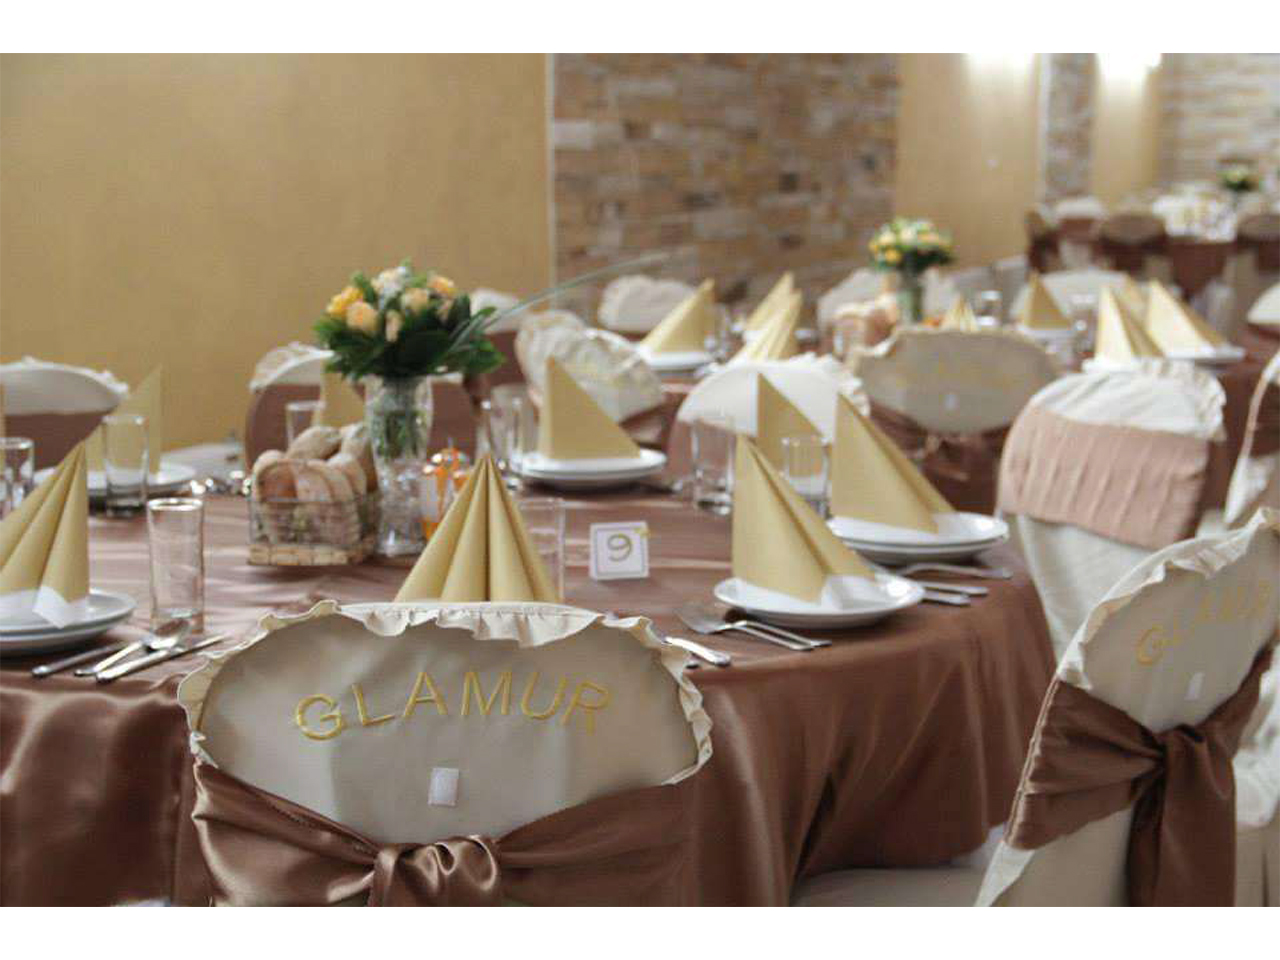 Slika 7 - GLAMUR SALA ZA PROSLAVE Restorani za svadbe, proslave Beograd